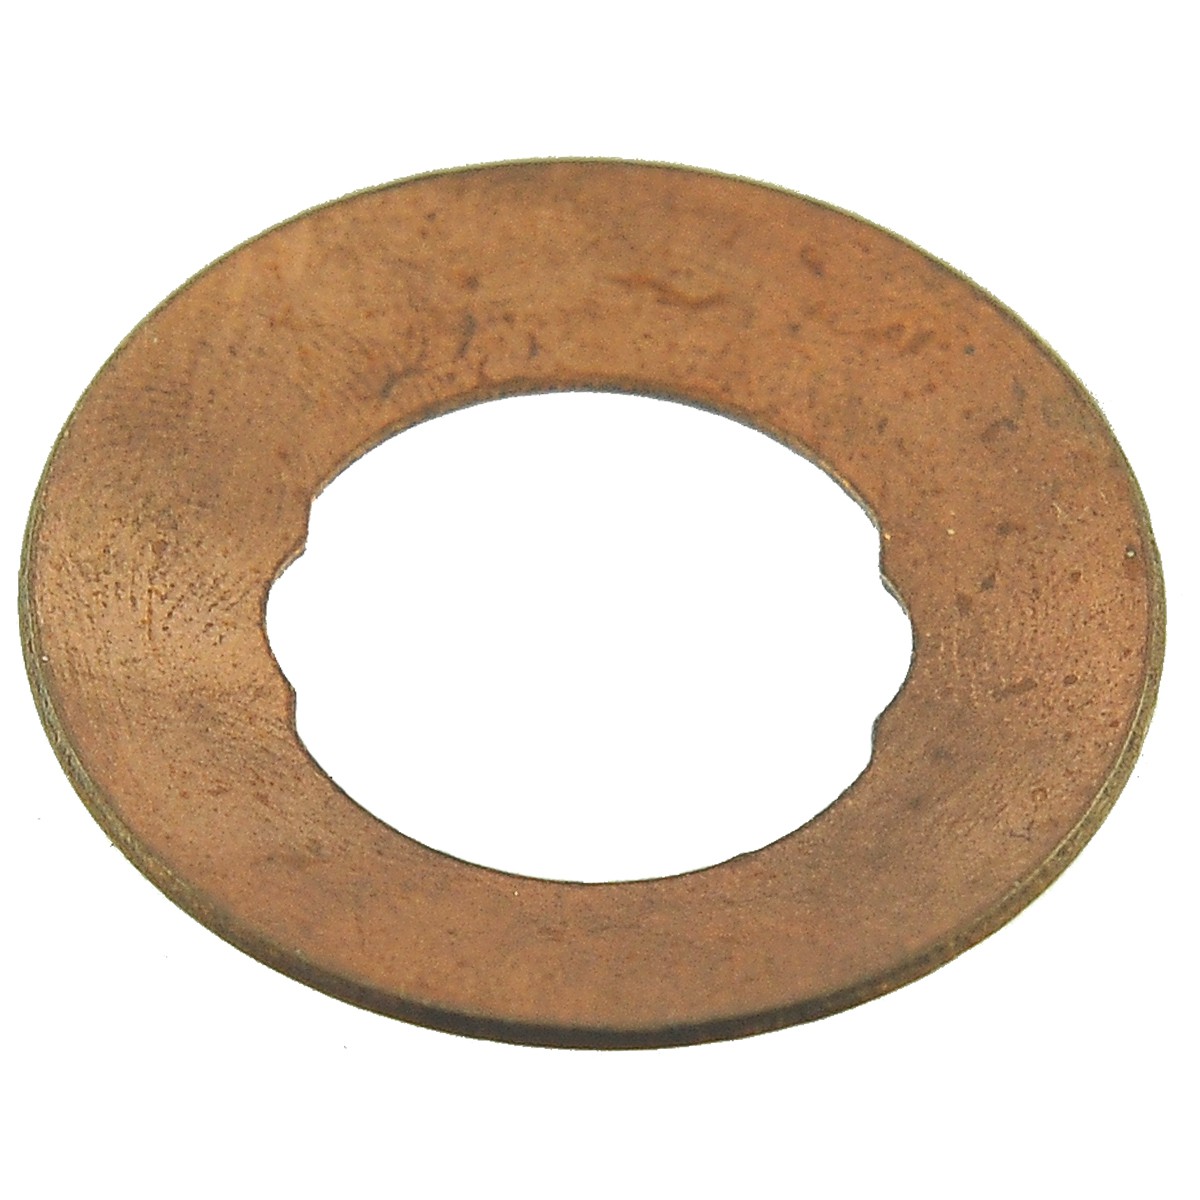 Rondelle en cuivre / 21,20 x 37,50 mm / Iseki TS2510 / 1656-304-002-00 / 9-26-107-01